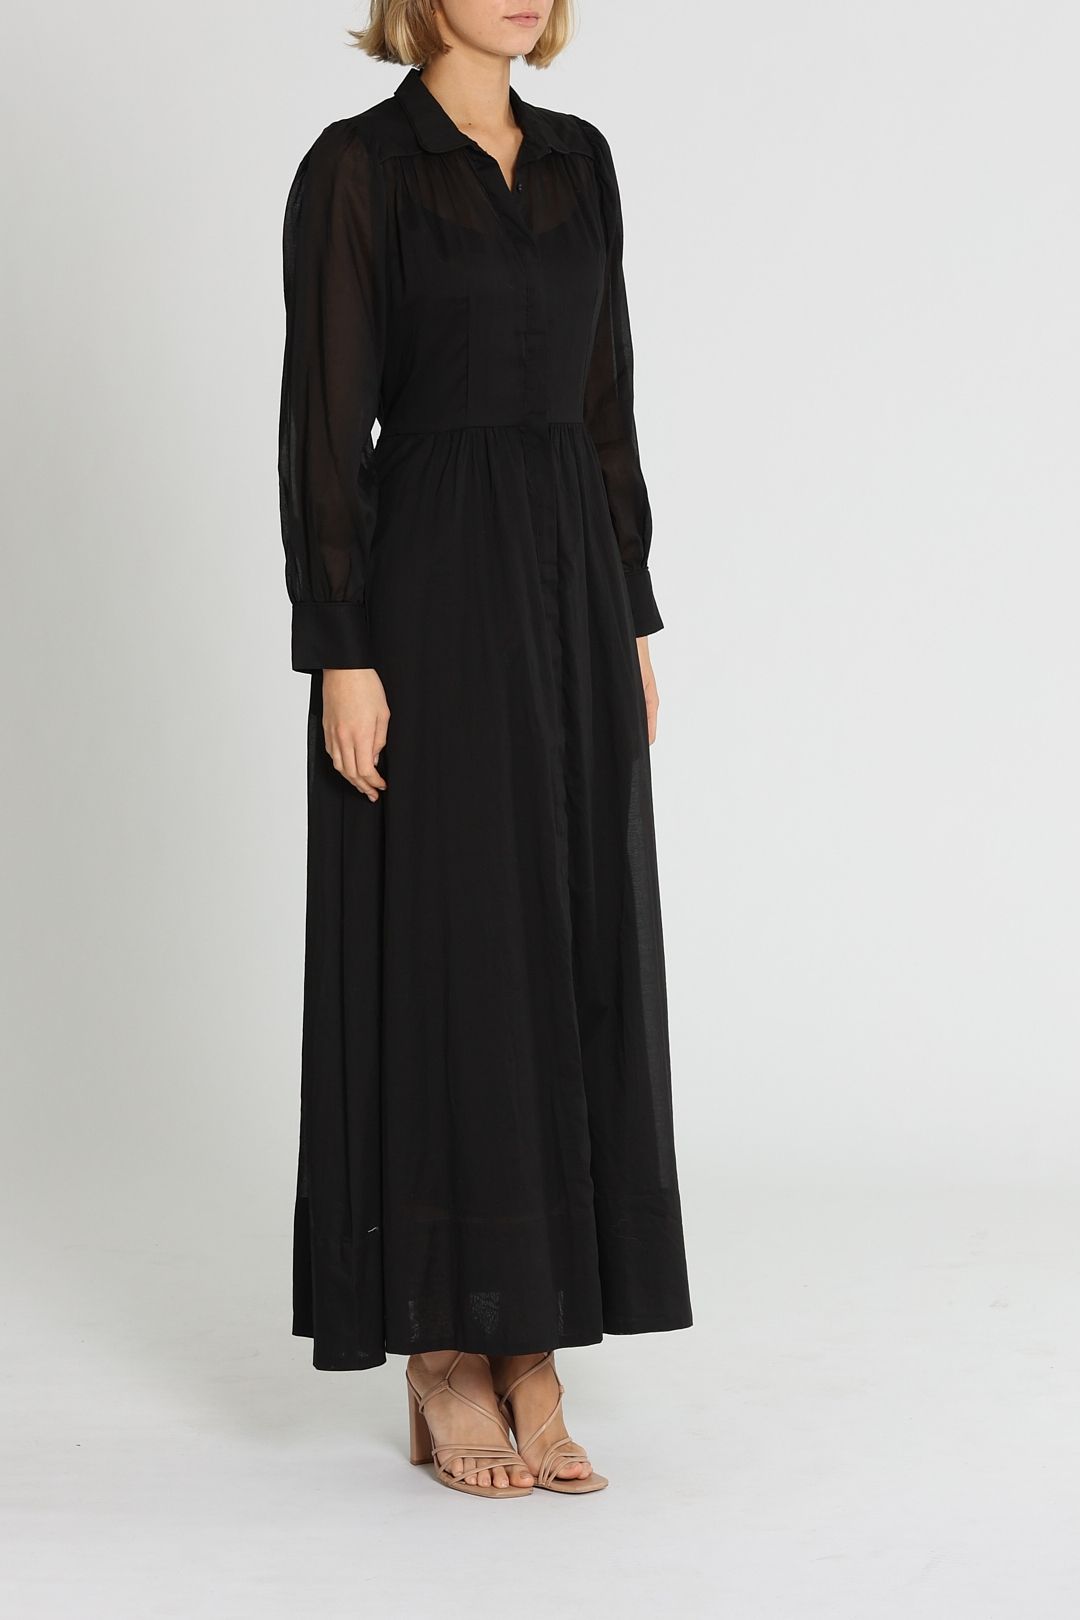 Morrison Imani Maxi Dress Black